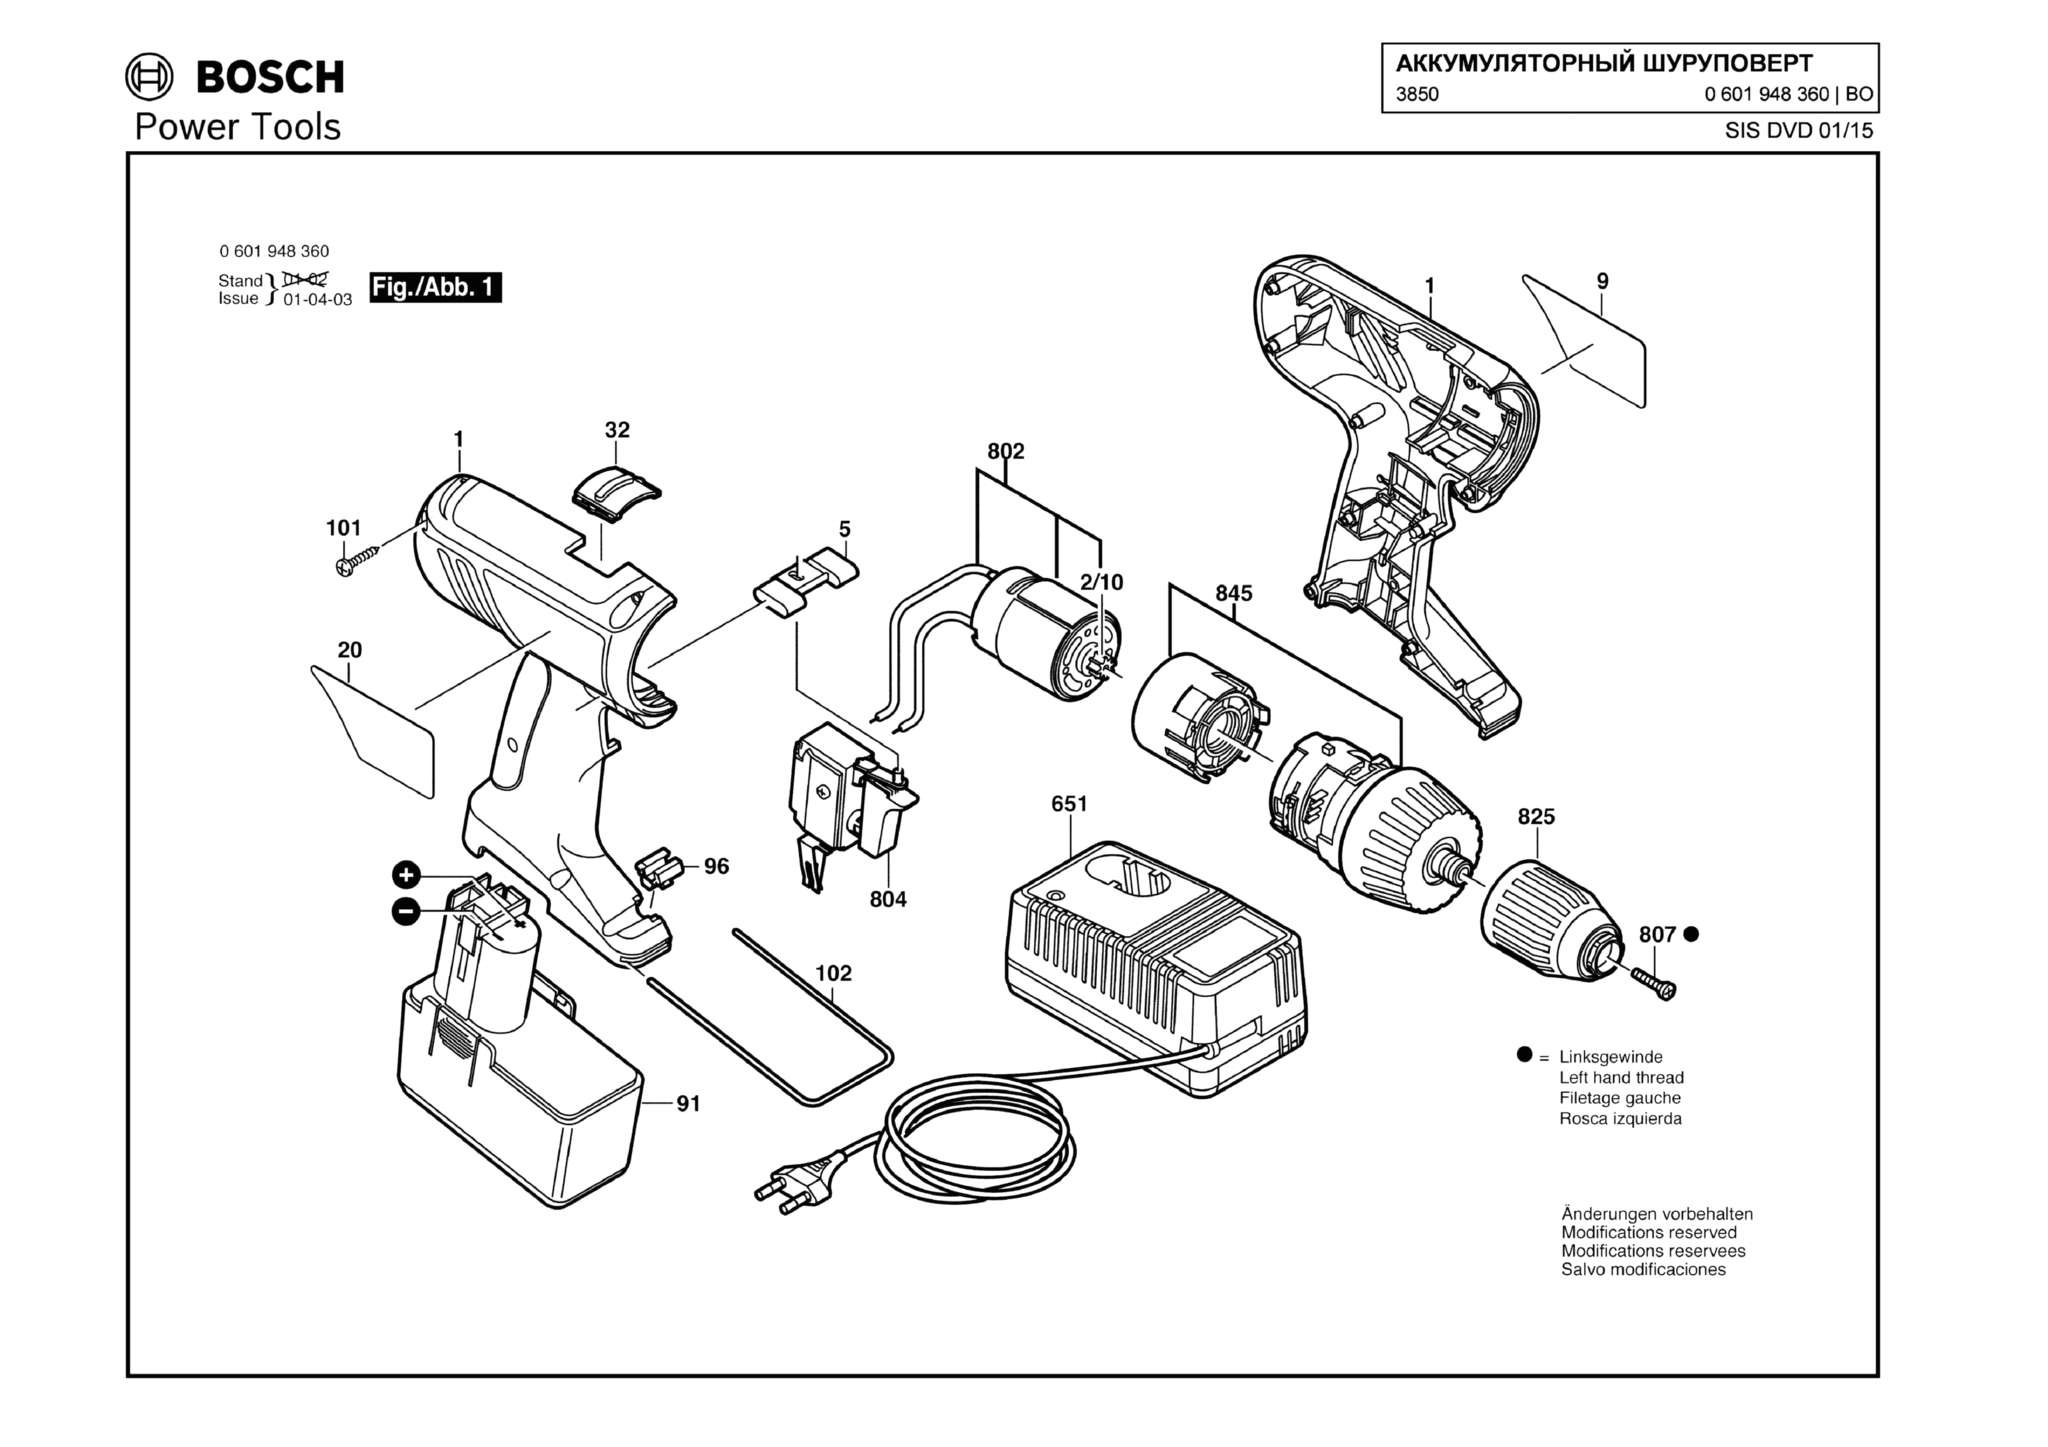 Запчасти, схема и деталировка Bosch 3850 (ТИП 0601948360)